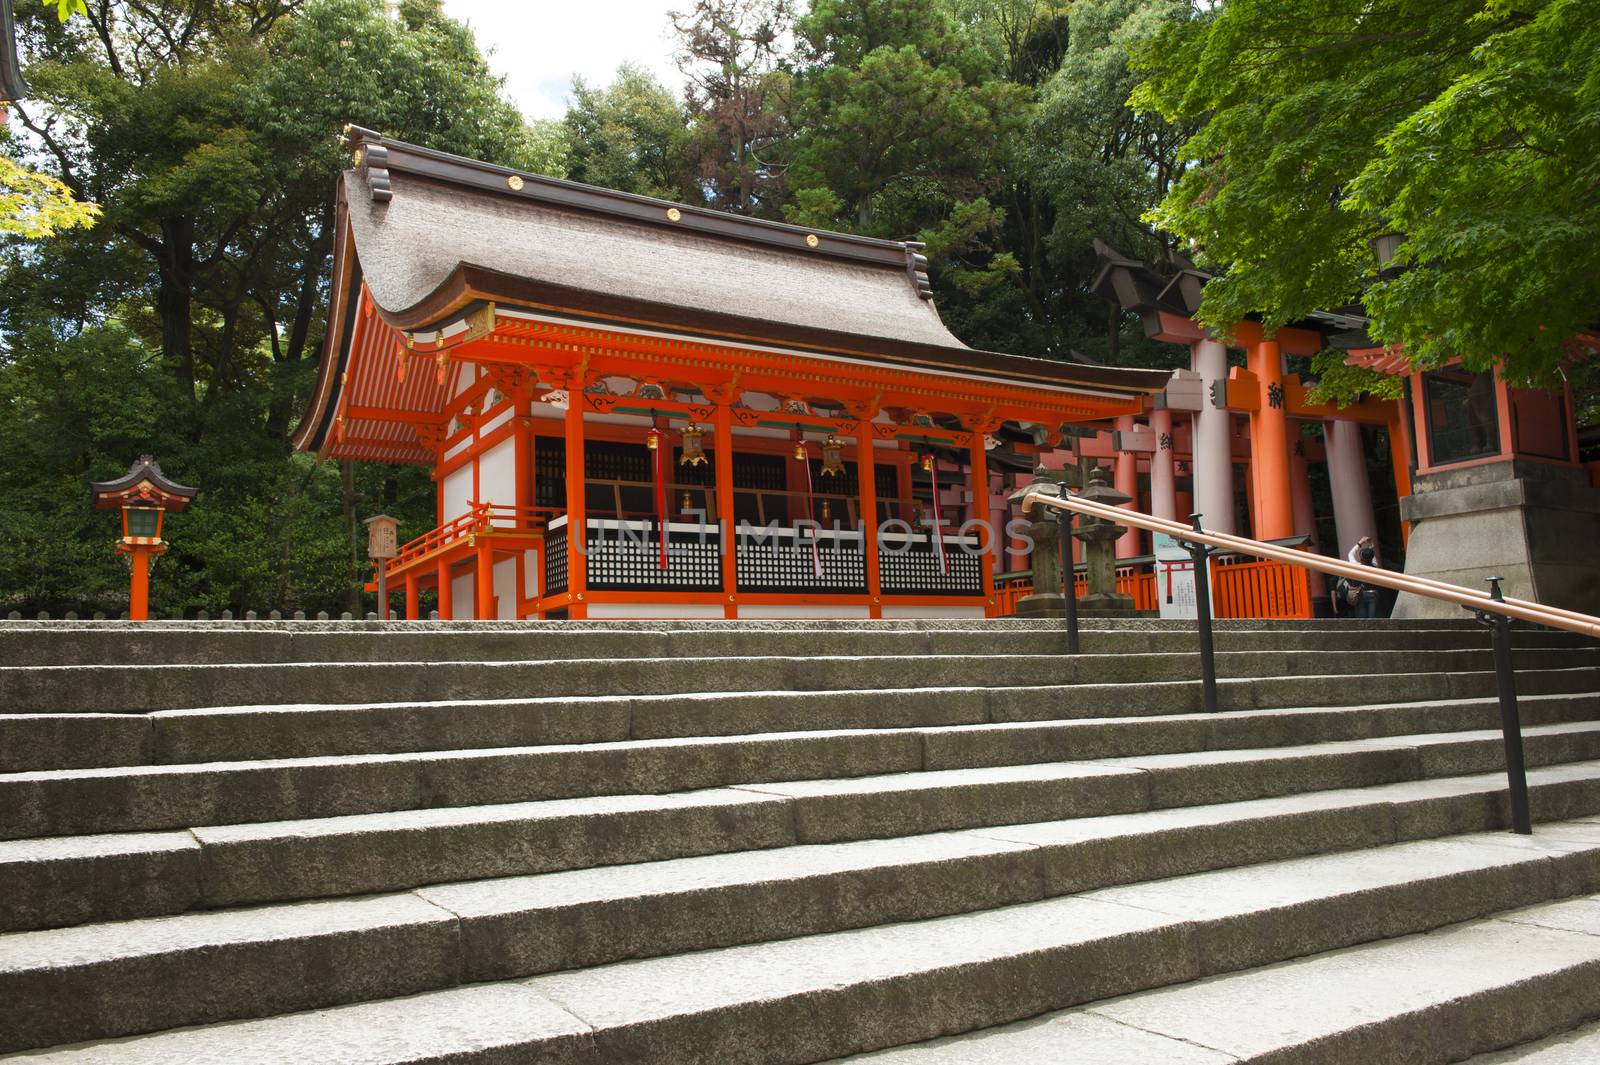 Famous shinto shrine of Fushimi Inari Taisha near Kyoto, Japan